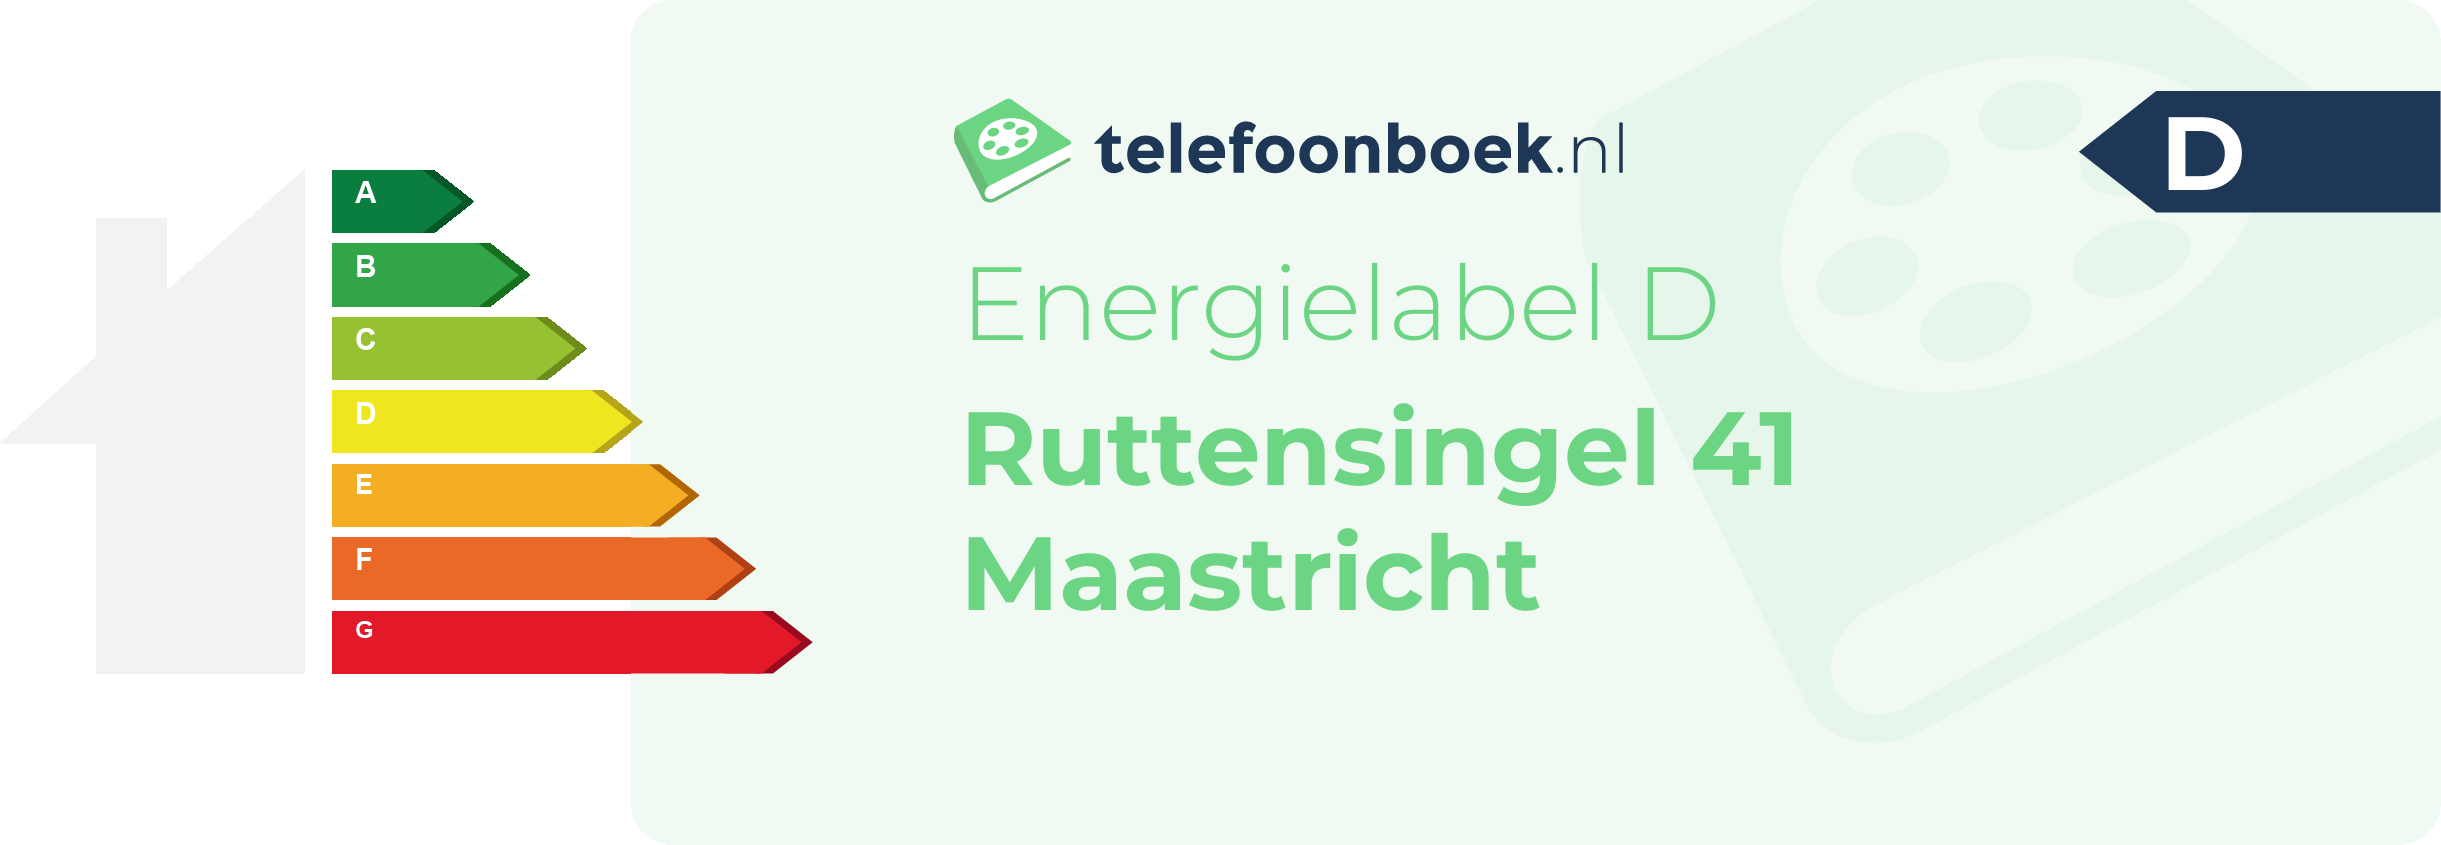 Energielabel Ruttensingel 41 Maastricht